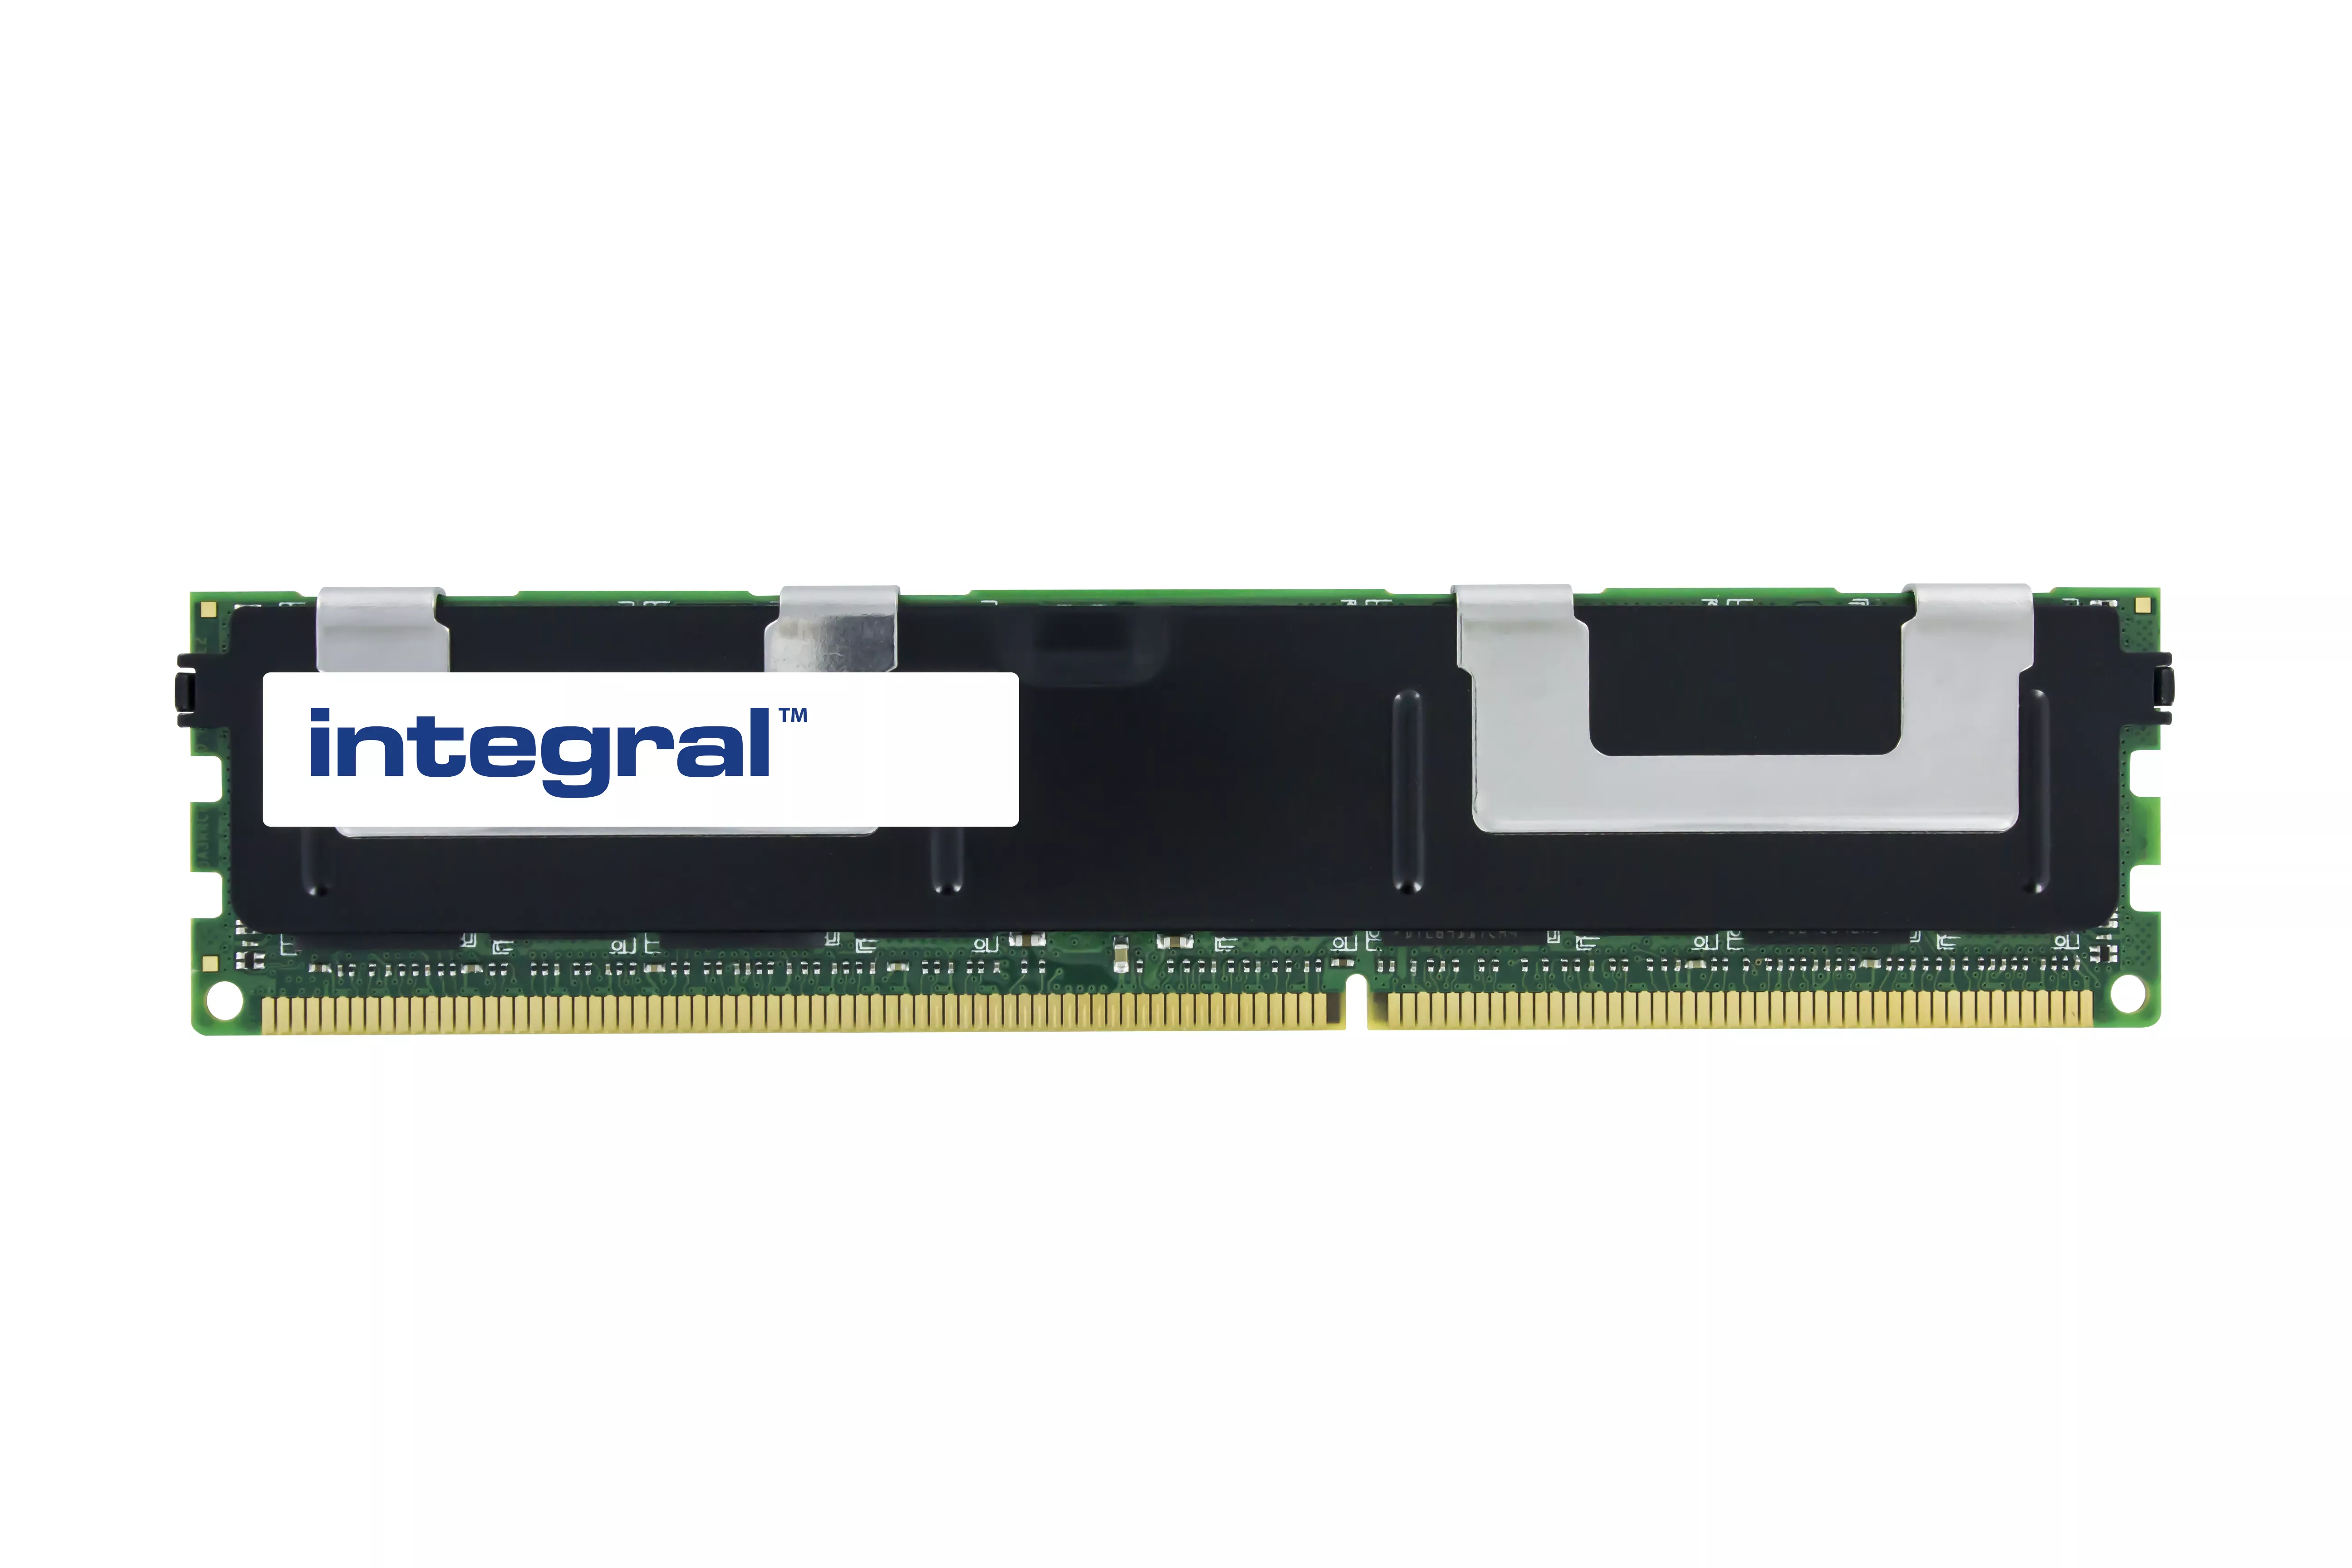 Achat Integral 8GB DDR3 1600MHz DESKTOP NON-ECC MEMORY - 5055288480667